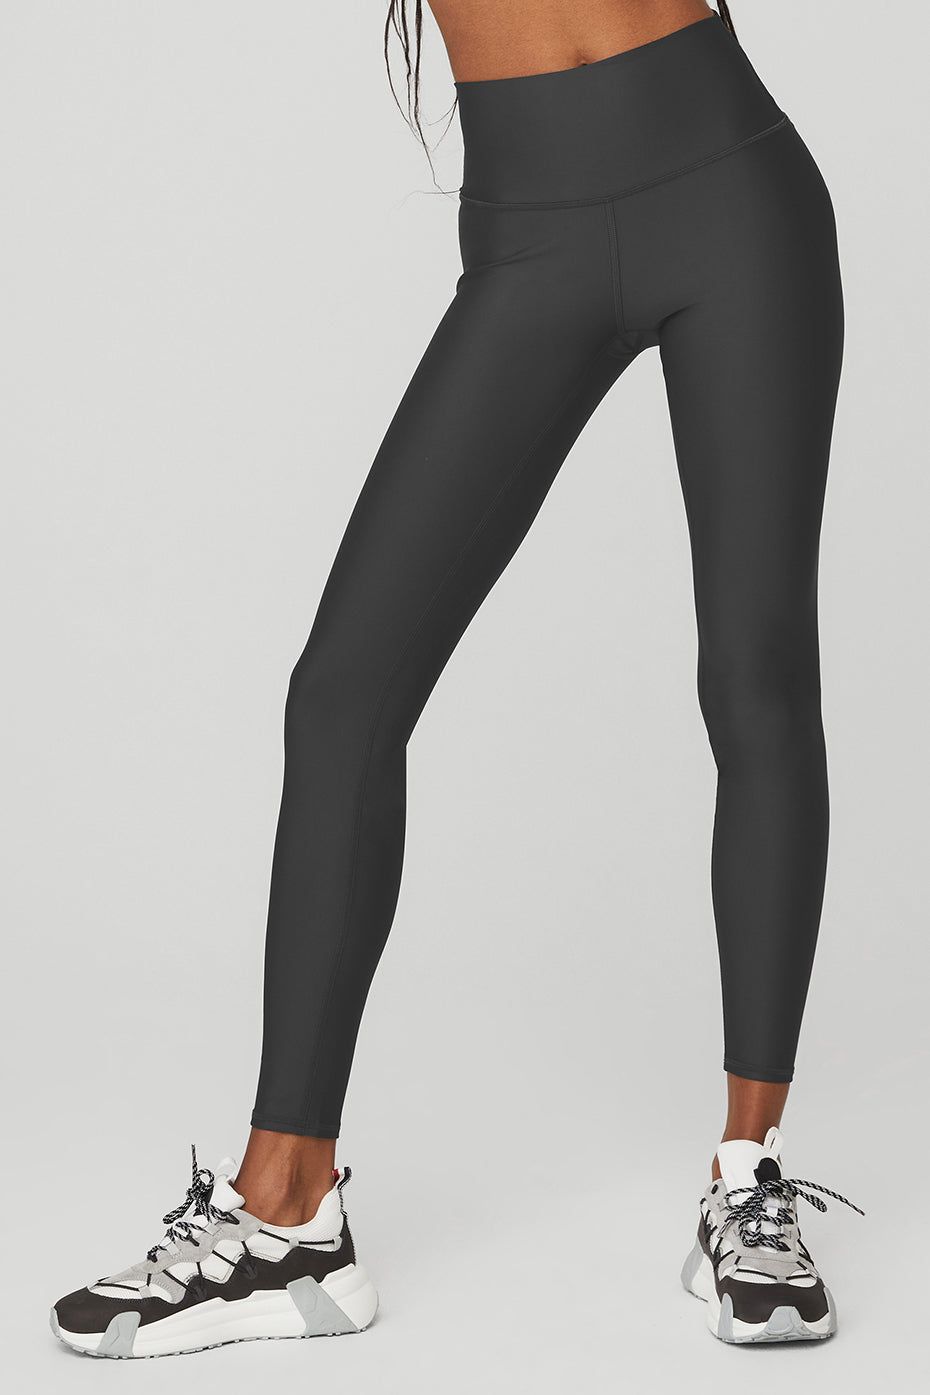 Alo Yoga Women's 7/8 High Waist Airlift Leggings, Black, XL: Buy